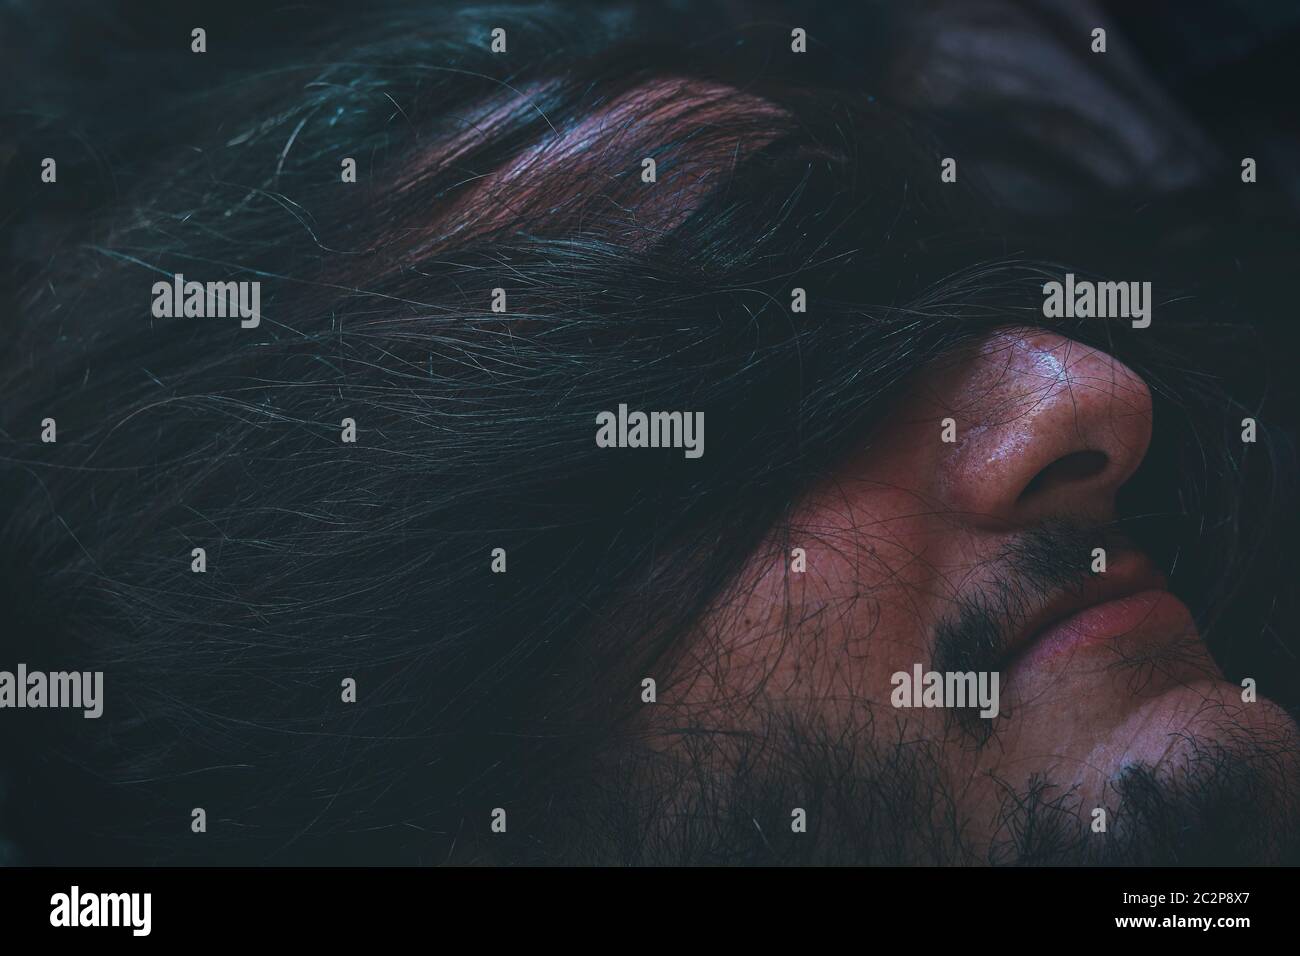 Foto conceptual de un hombre vendado por los ojos del cabello humano que muestra el concepto de lucha, enfermedad de salud mental y su estigma social Foto de stock